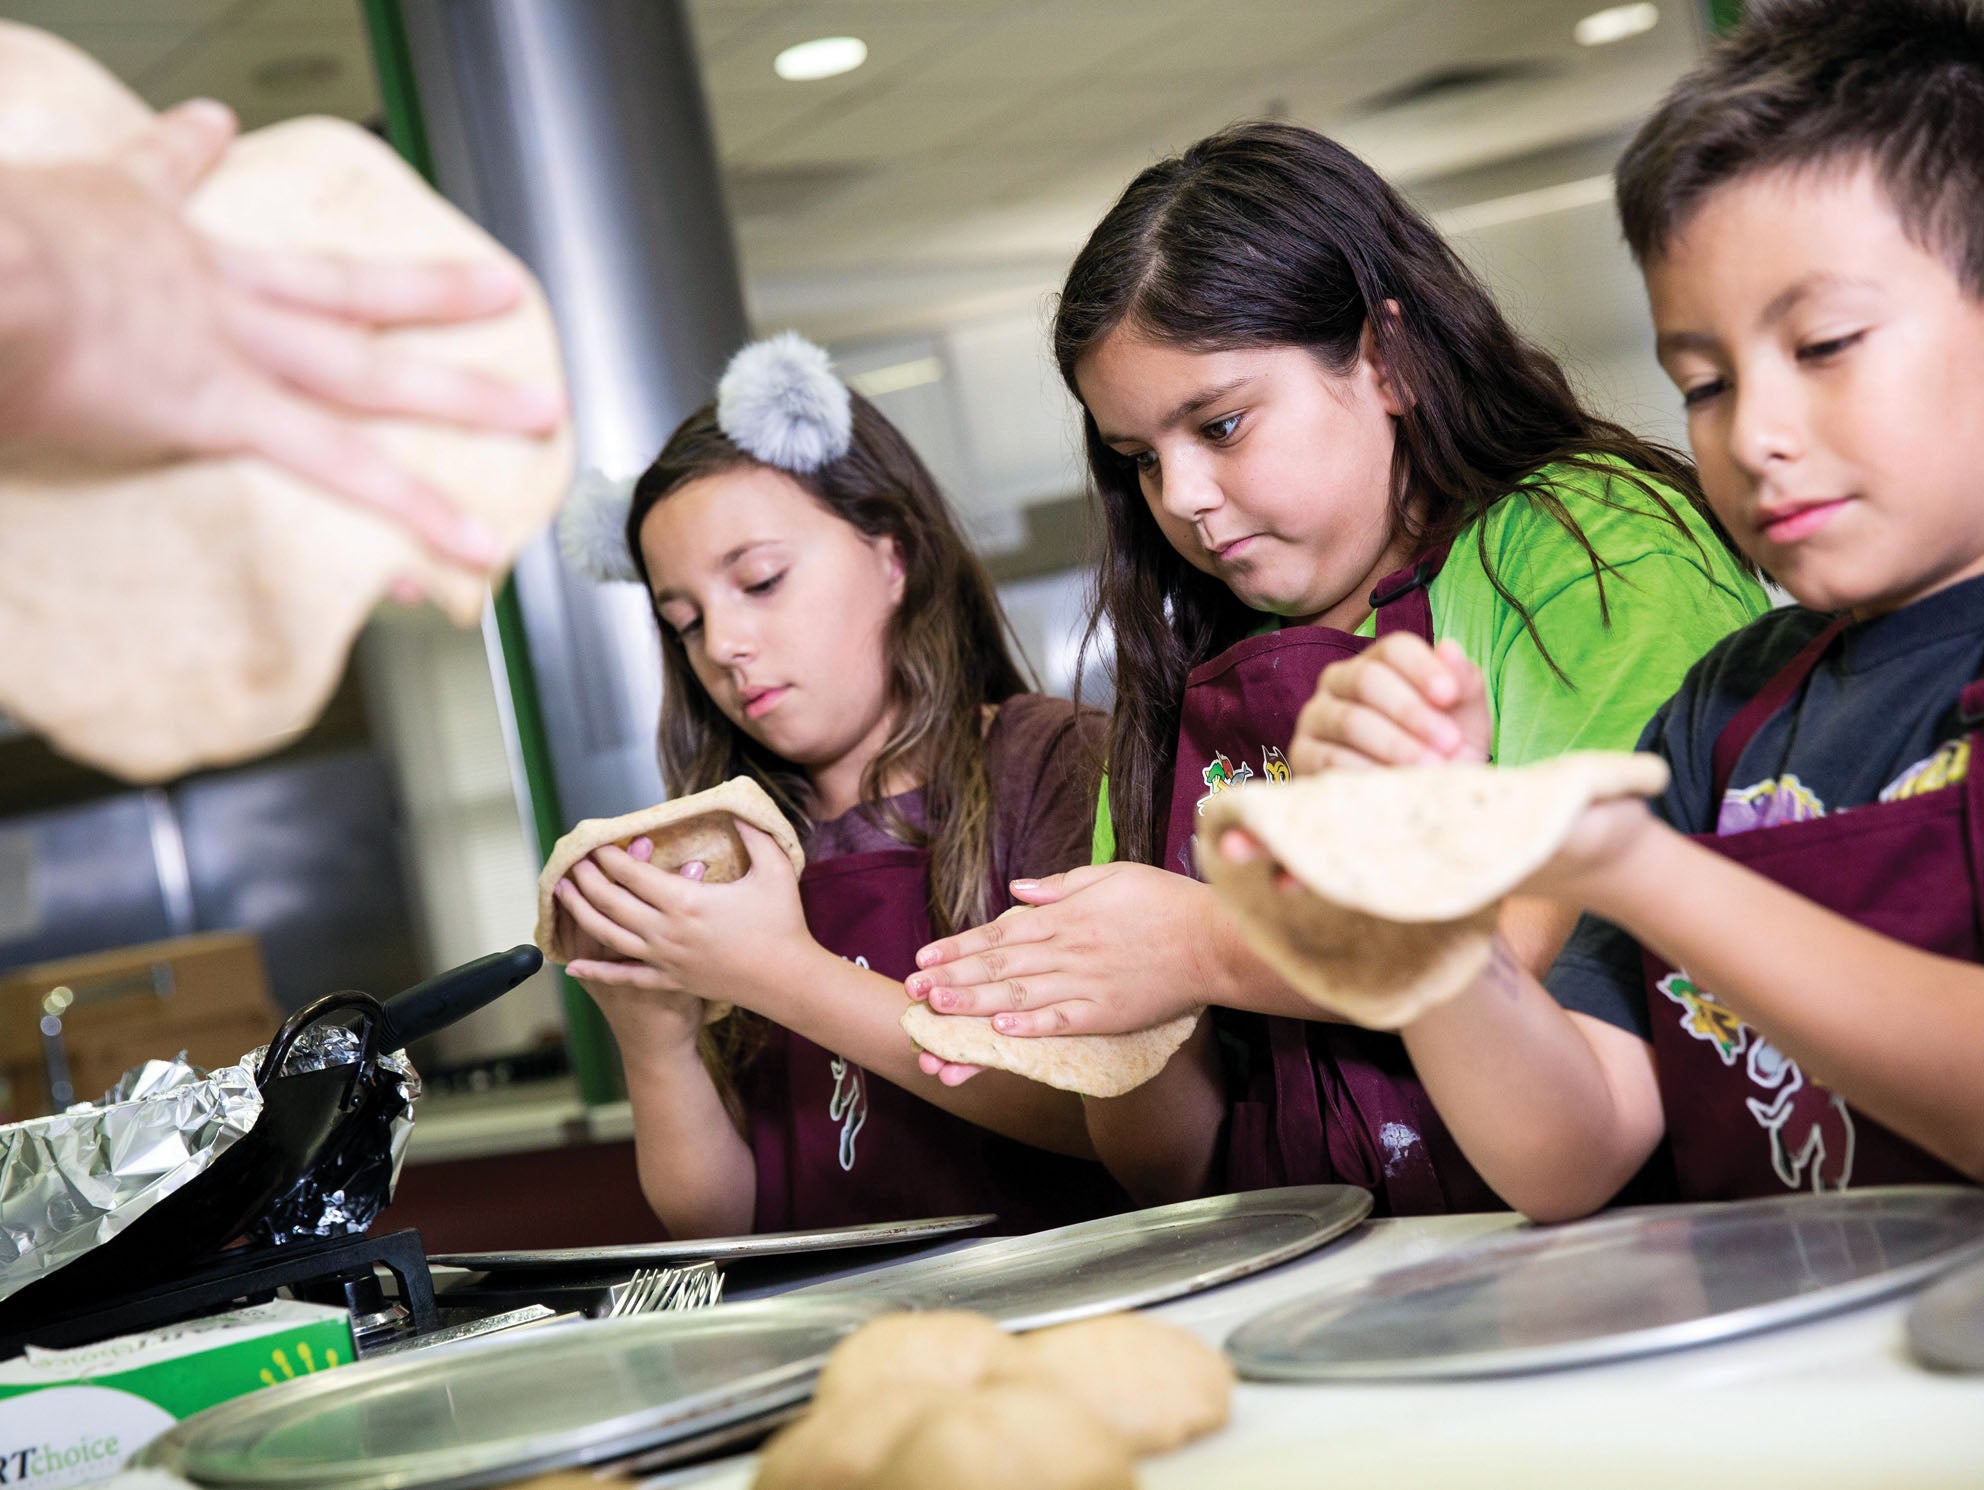 Children make tortillas in an ASU kitchen